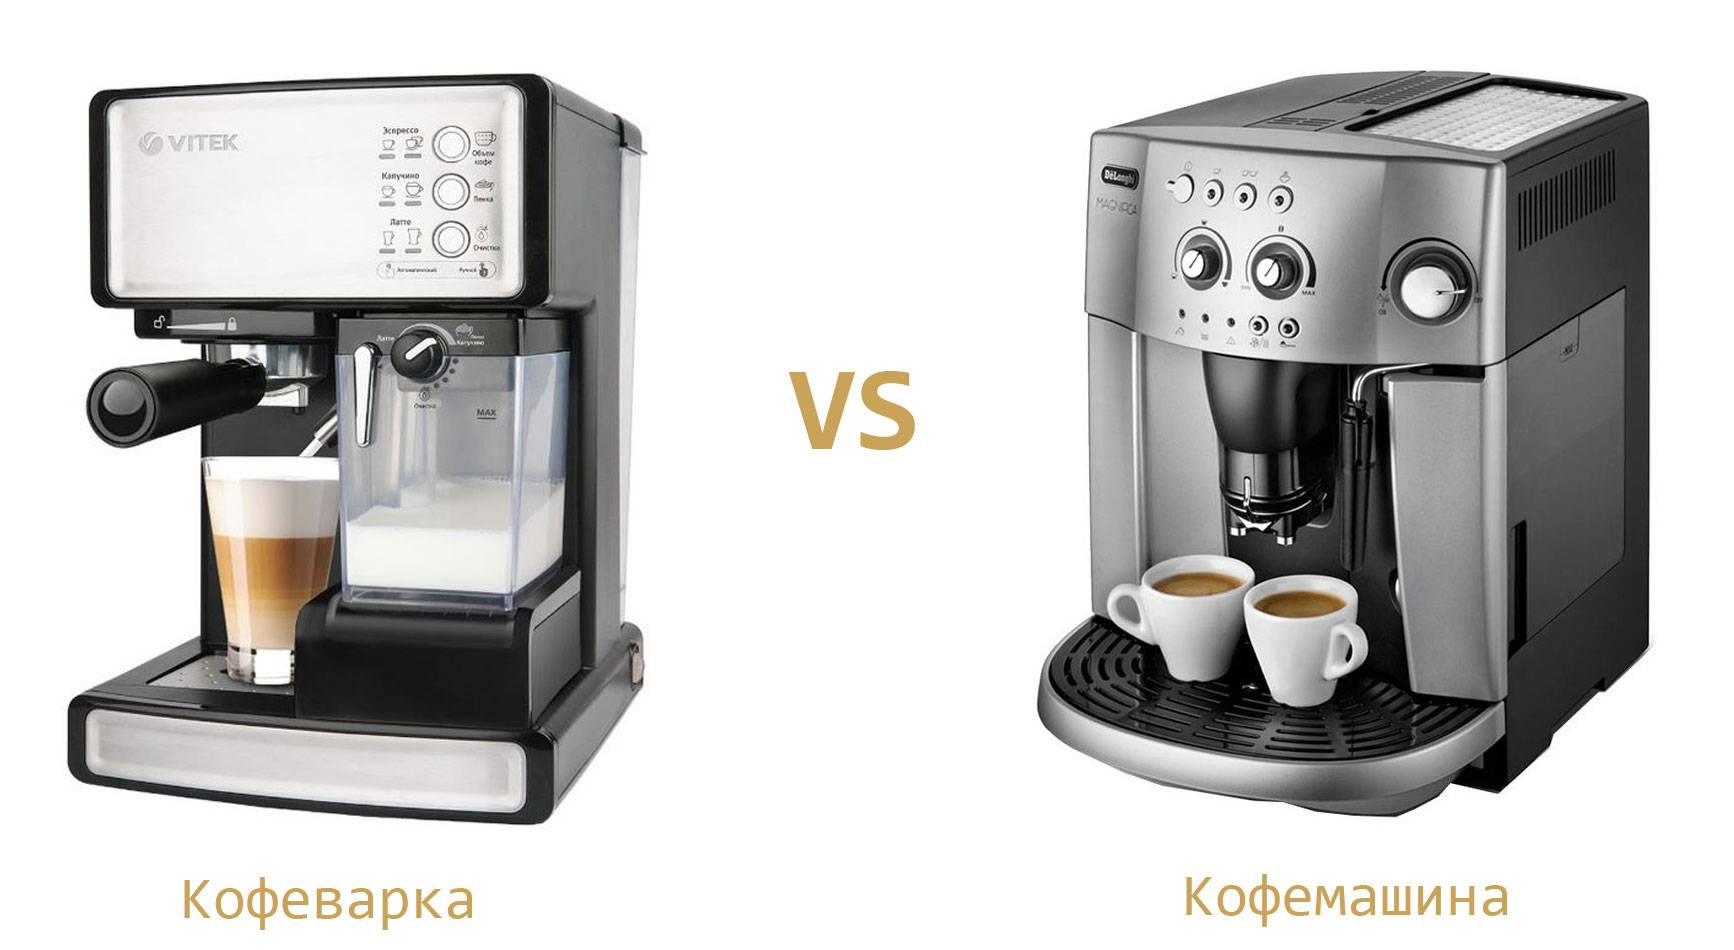 Какие кофемашины варят самый вкусный кофе?